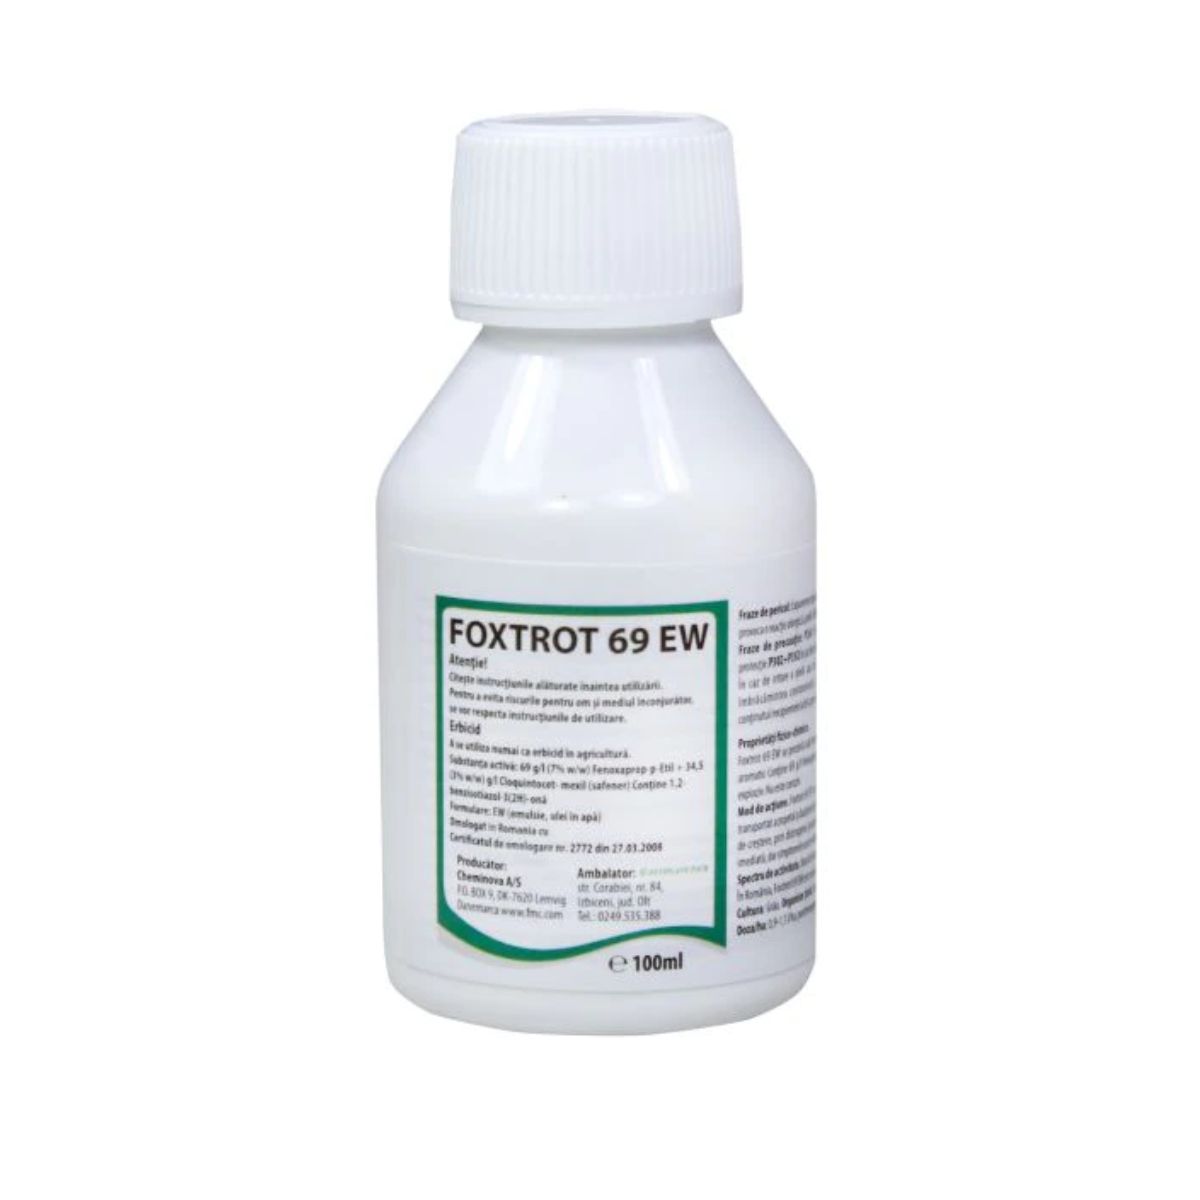 Erbicide - Erbicid grau Foxtrot 69 EW, 100 ml, hectarul.ro